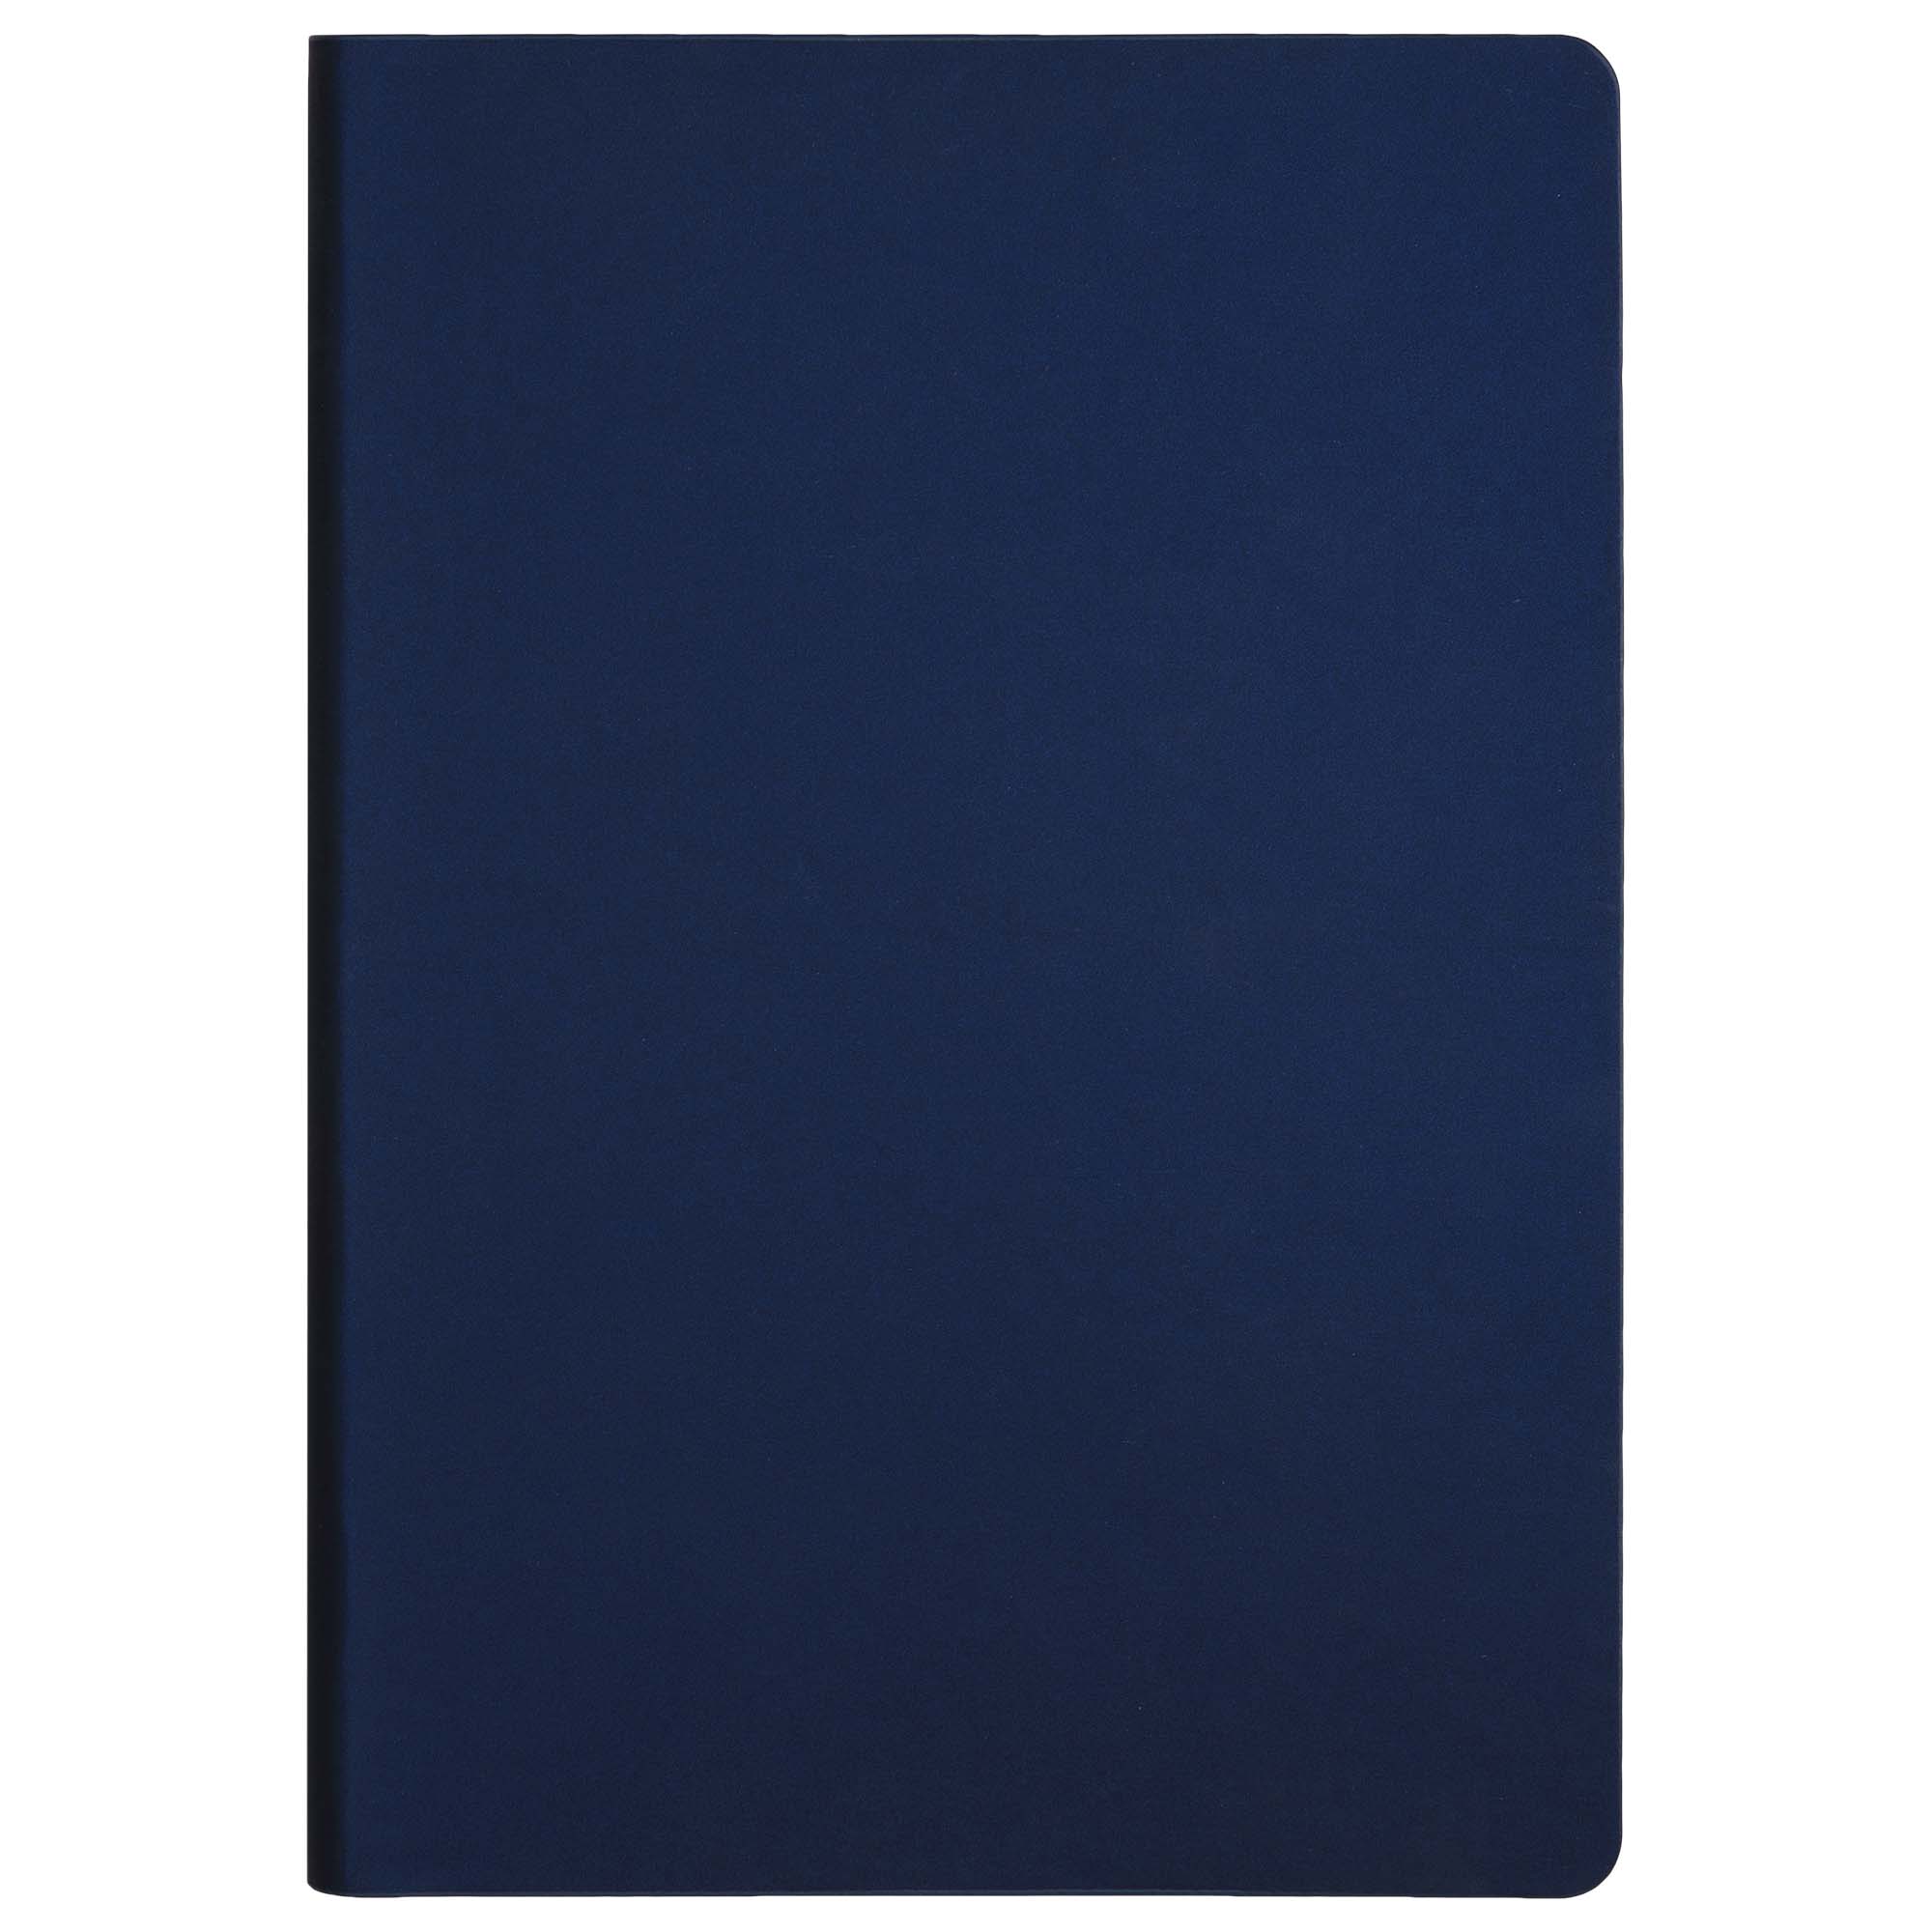 Ежедневник Portobello Trend, Star, недатированный, синий (без упаковки, без стикера, с черной подложкой, без прокраса уреза)